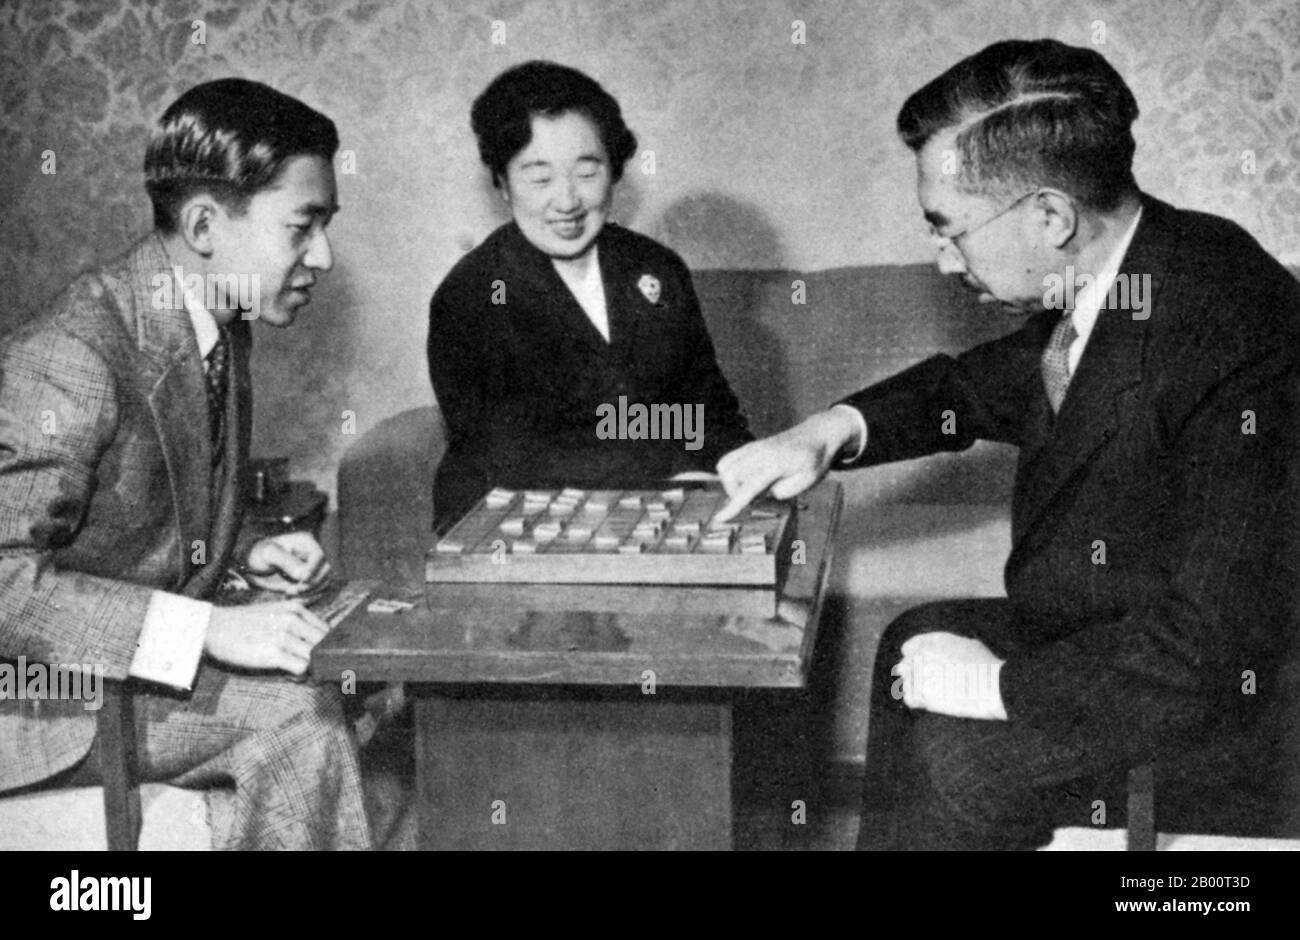 Giappone: La famiglia imperiale che gioca un gioco da tavolo. Immagine informale della famiglia imperiale che gioca un gioco da tavolo (anni '50). Il principe ereditario Akihito a sinistra, l'imperatrice Kojun centro, l'imperatore Hirohito a destra. Hirohito, l'Imperatore Shōwa (29 aprile 1901 – 7 gennaio 1989), fu il 124° imperatore del Giappone secondo l'ordine tradizionale, regnante dal 25 dicembre 1926, fino alla sua morte nel 1989. Anche se meglio conosciuto fuori dal Giappone con il suo nome personale Hirohito, in Giappone è ora riferito esclusivamente con il suo nome postumo imperatore Shōwa. Foto Stock